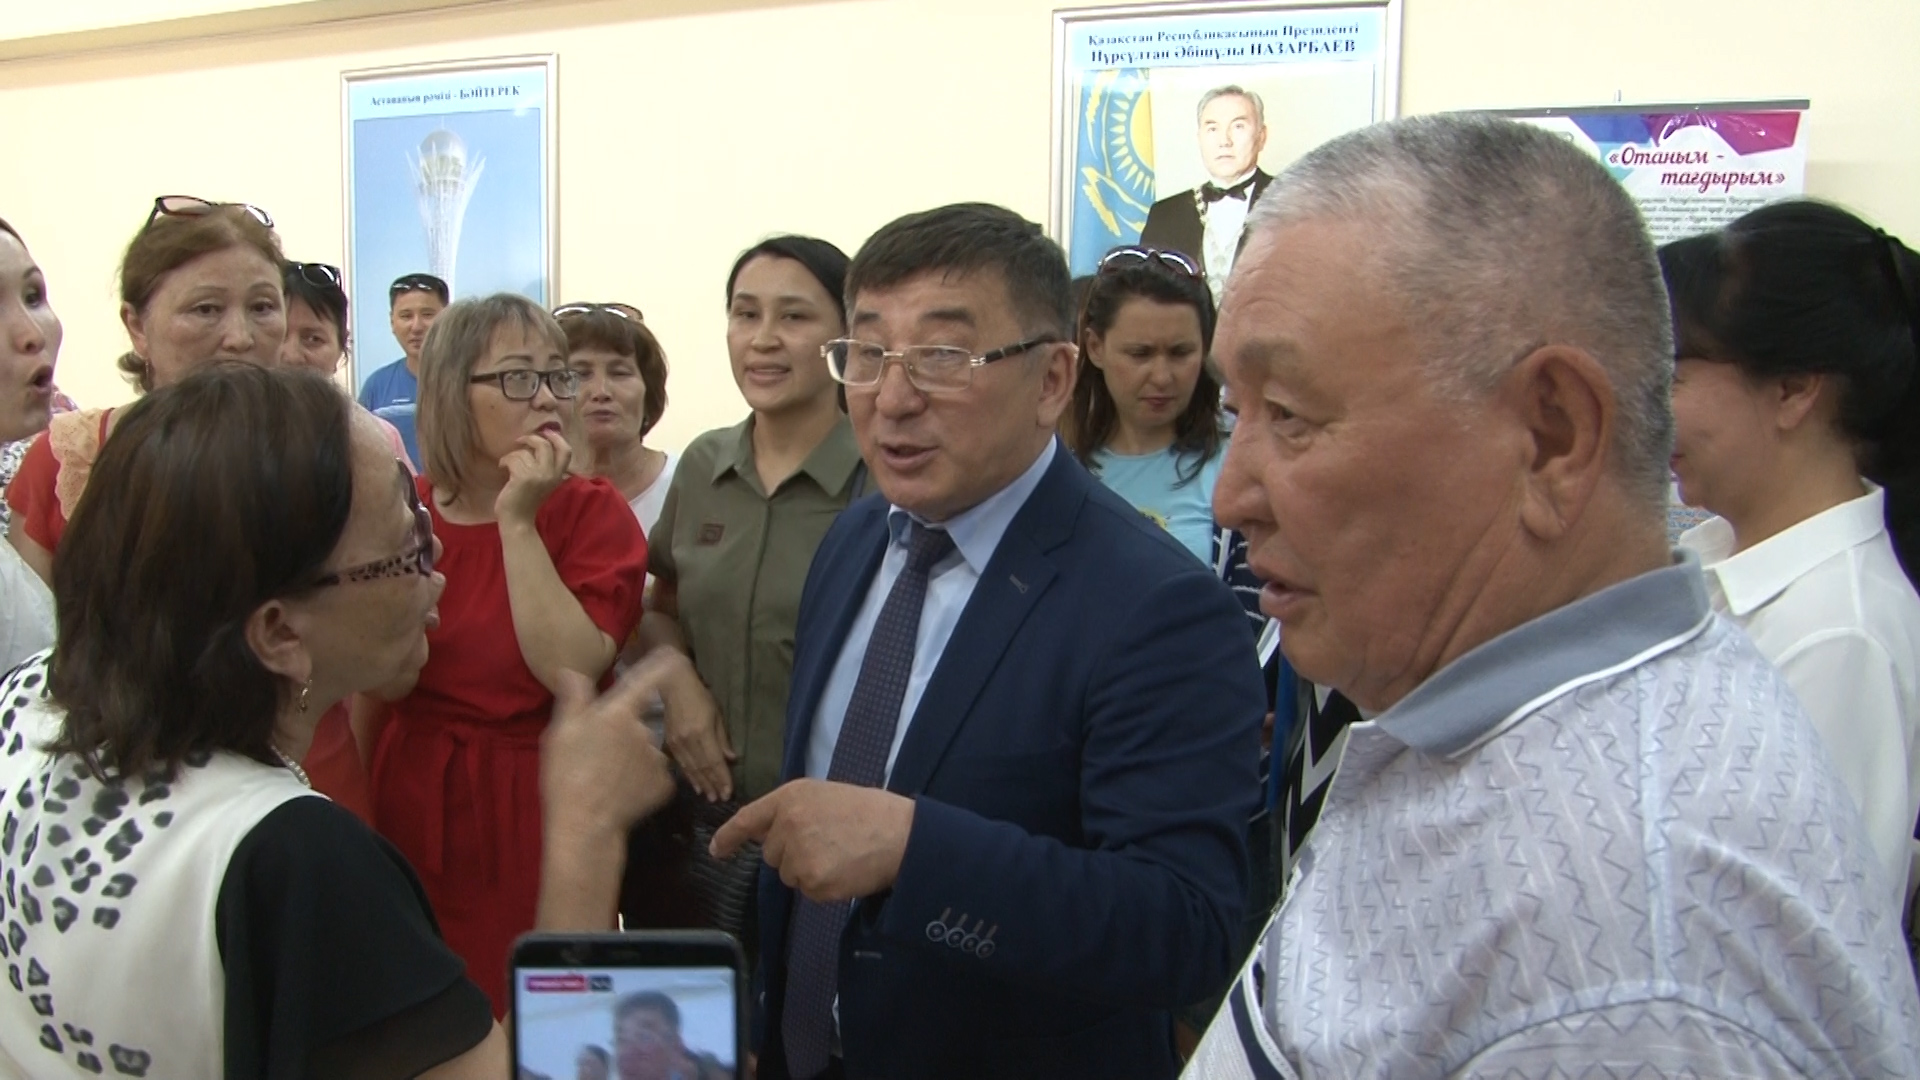 Заместитель акима области Марат Жундубаев обнадежил родителей учеников школы №24, заверив, что учебное заведение останется на прежнем месте